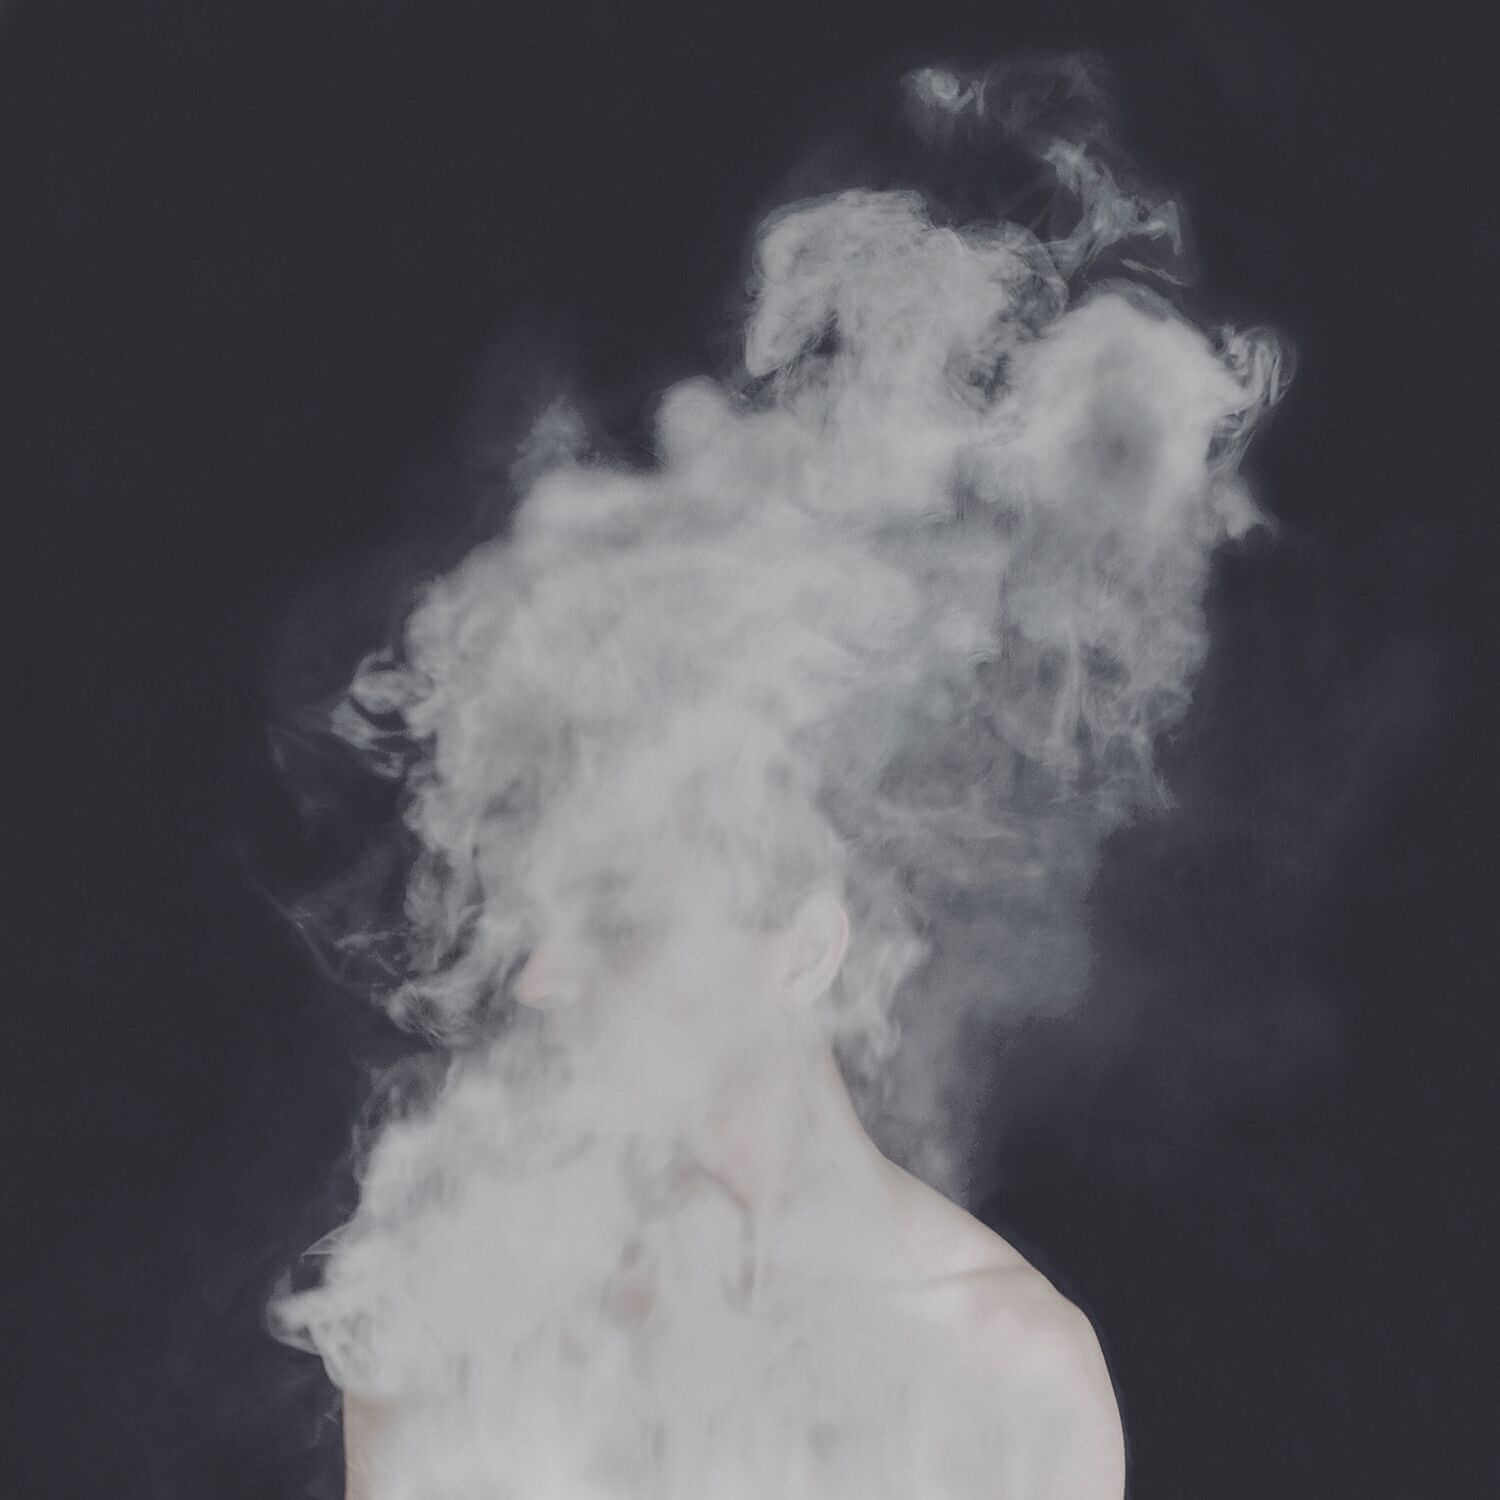 Fotografía surrealista de cuerpo humano deshaciendose en humo